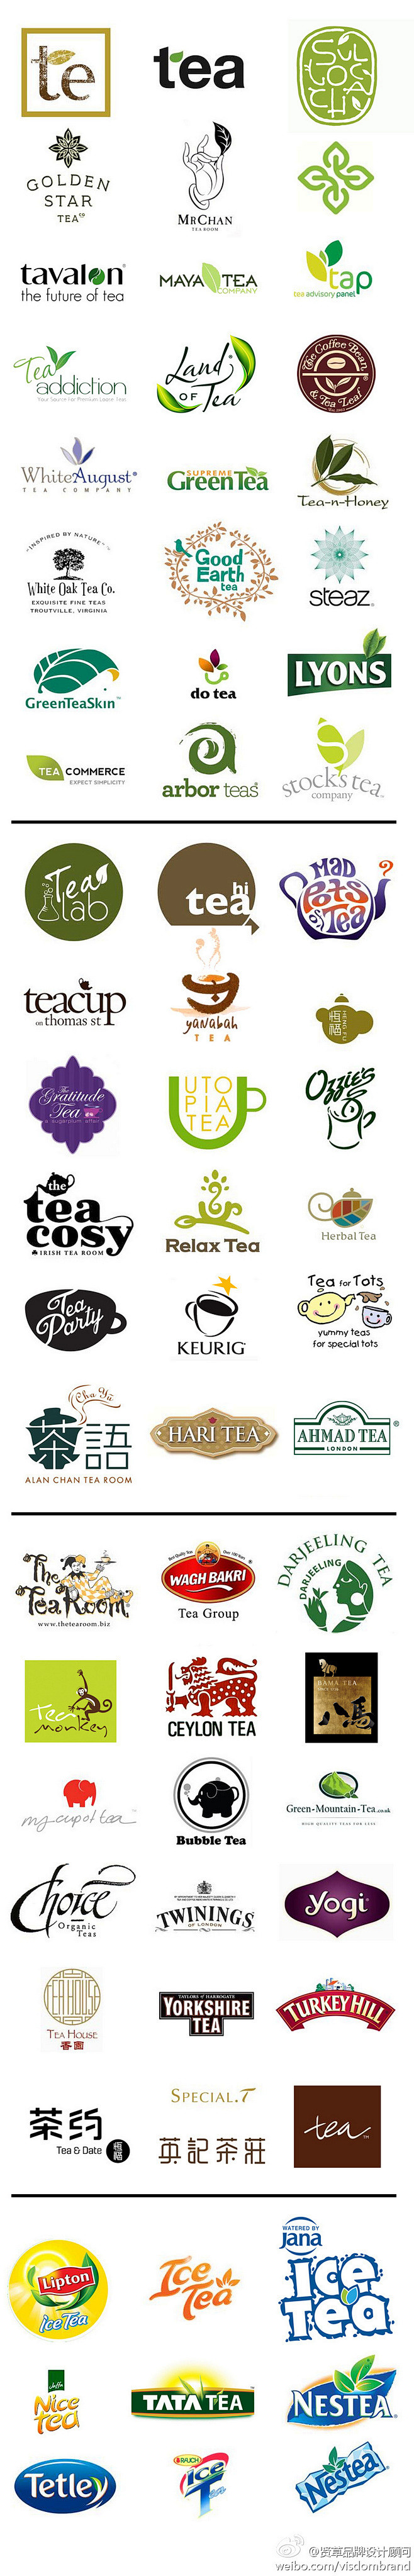 茶叶、茶企、茶饮料的品牌logo整理 设...